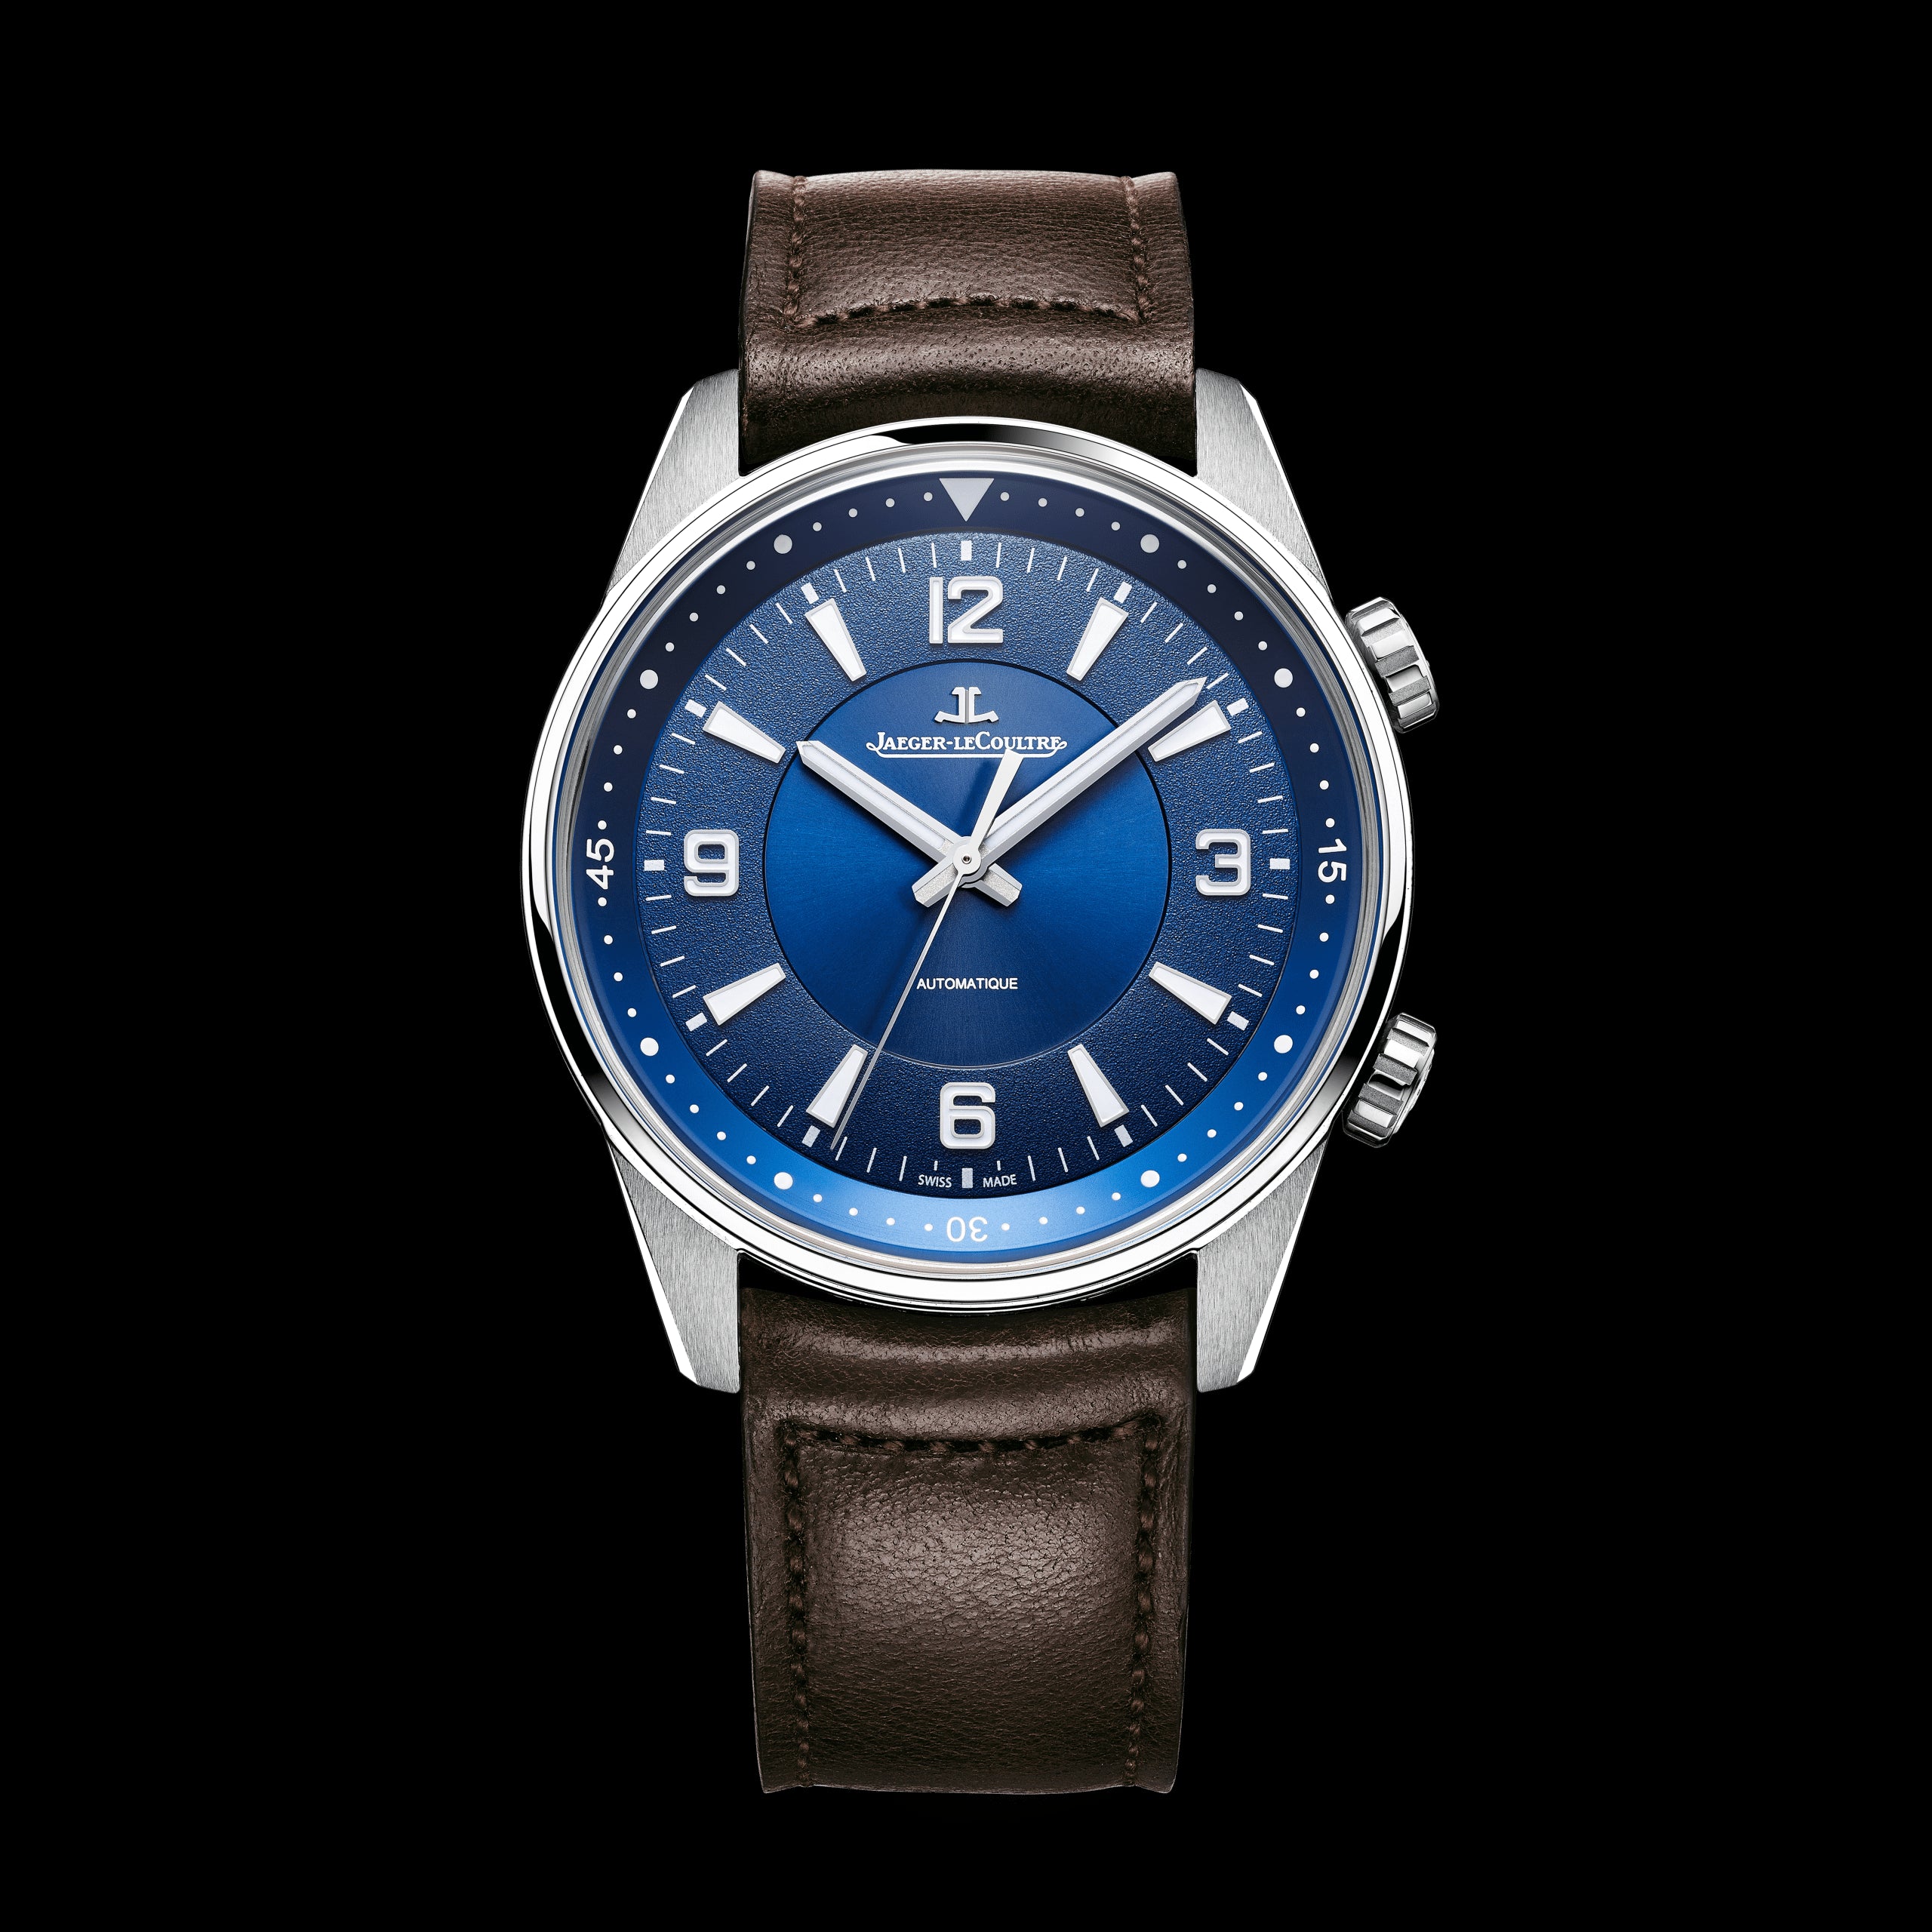 Jaeger-LeCoultre Polaris Automatic Watch, 41mm Blue Dial, Q9008480